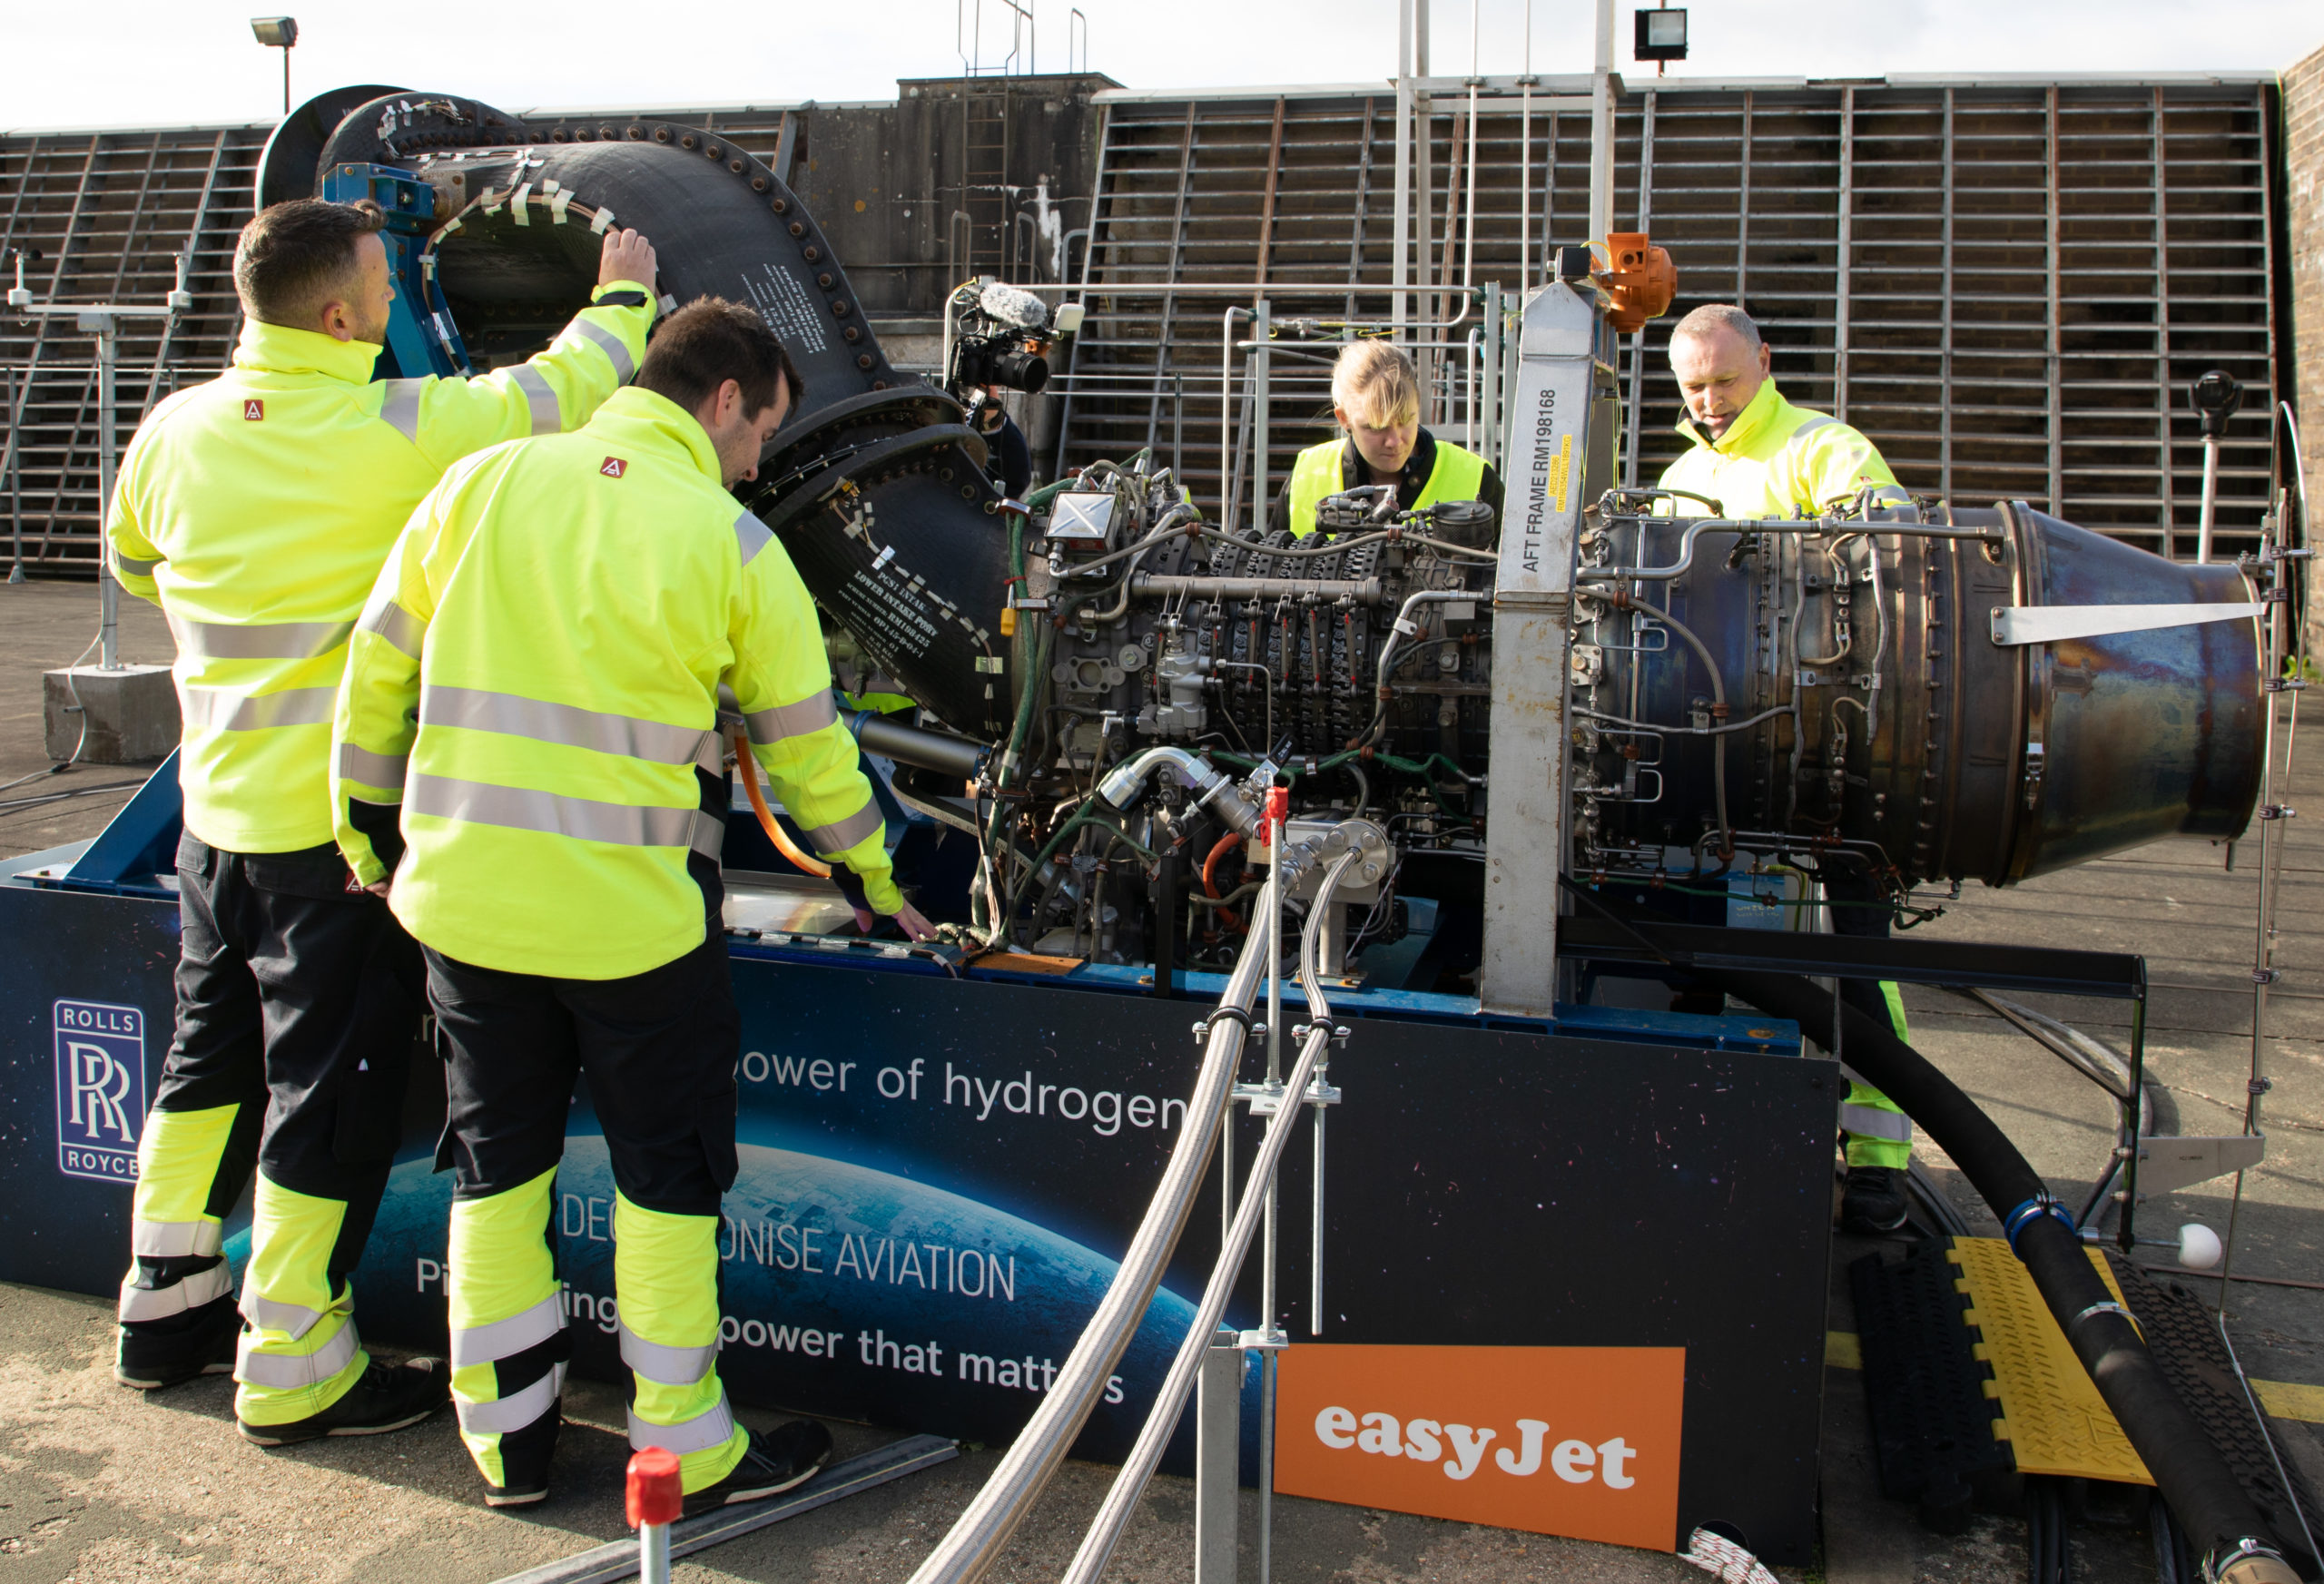 Rolls-Royce e easyJet querem provar que é possível uso de hidrogênio na aviação. Na imagem: teste de hidrogênio no motor Rolls-Royce AE 2100-A em Boscombe Down, Reino Unido (Foto: Rolls-Royce/Divulgação)